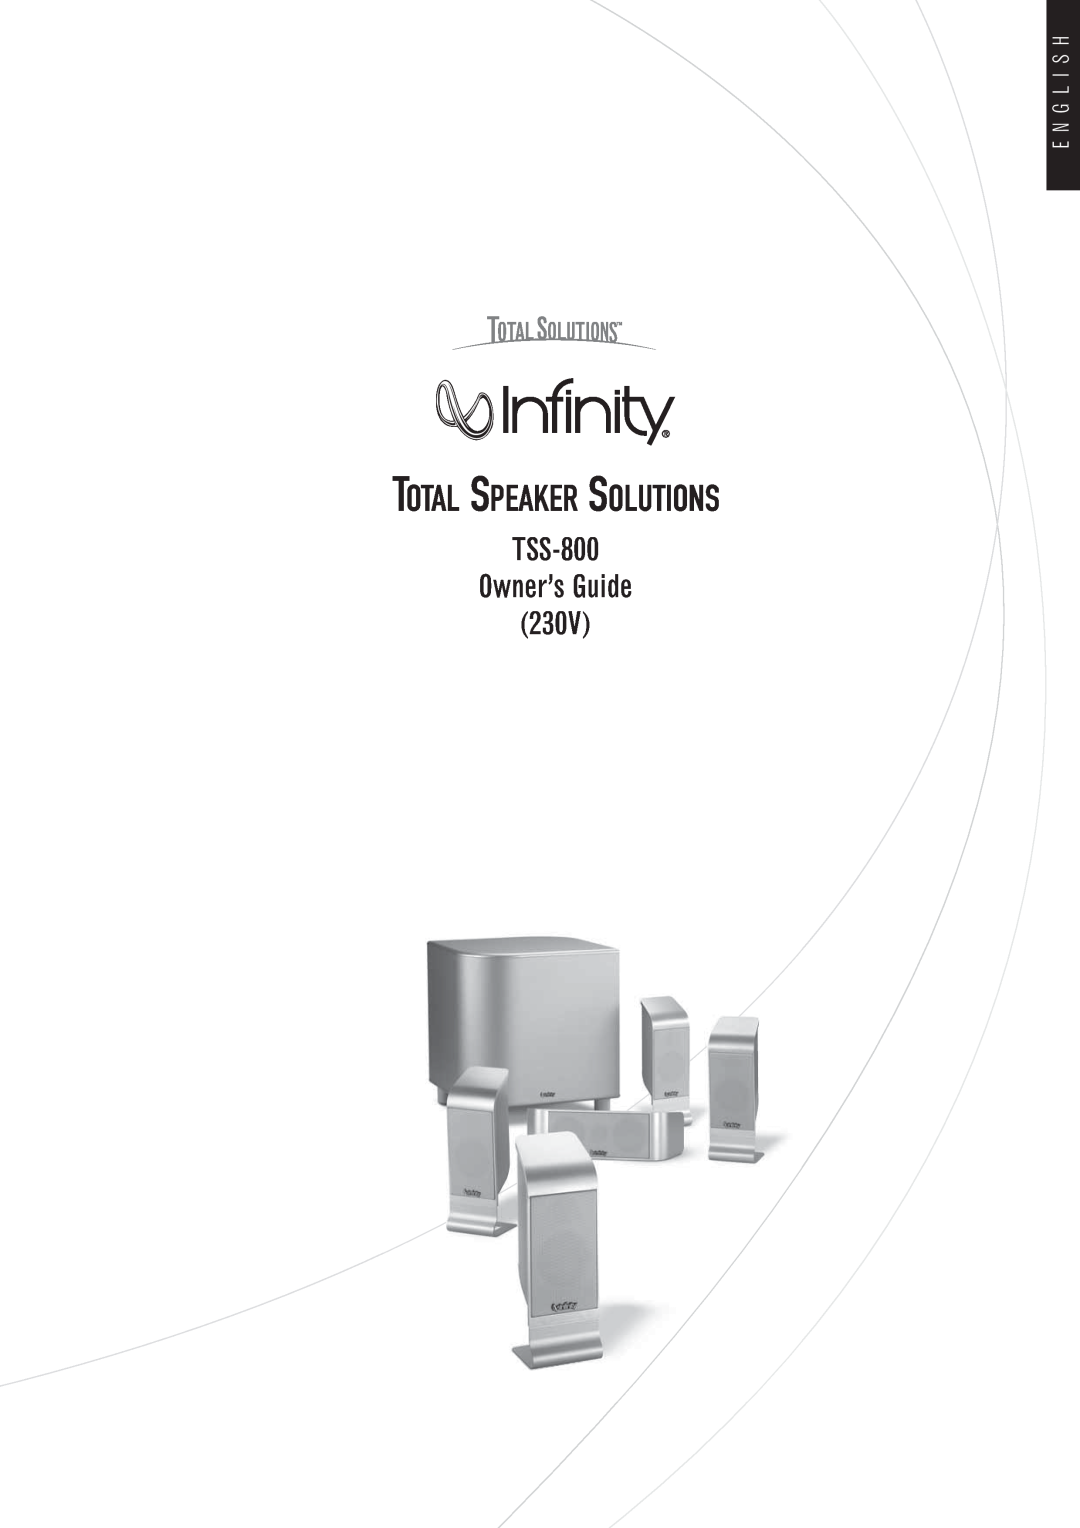 Infiniti Infinity Total Speaker Solutions manual E N G L I S H, TSS-800 Owner’s Guide 